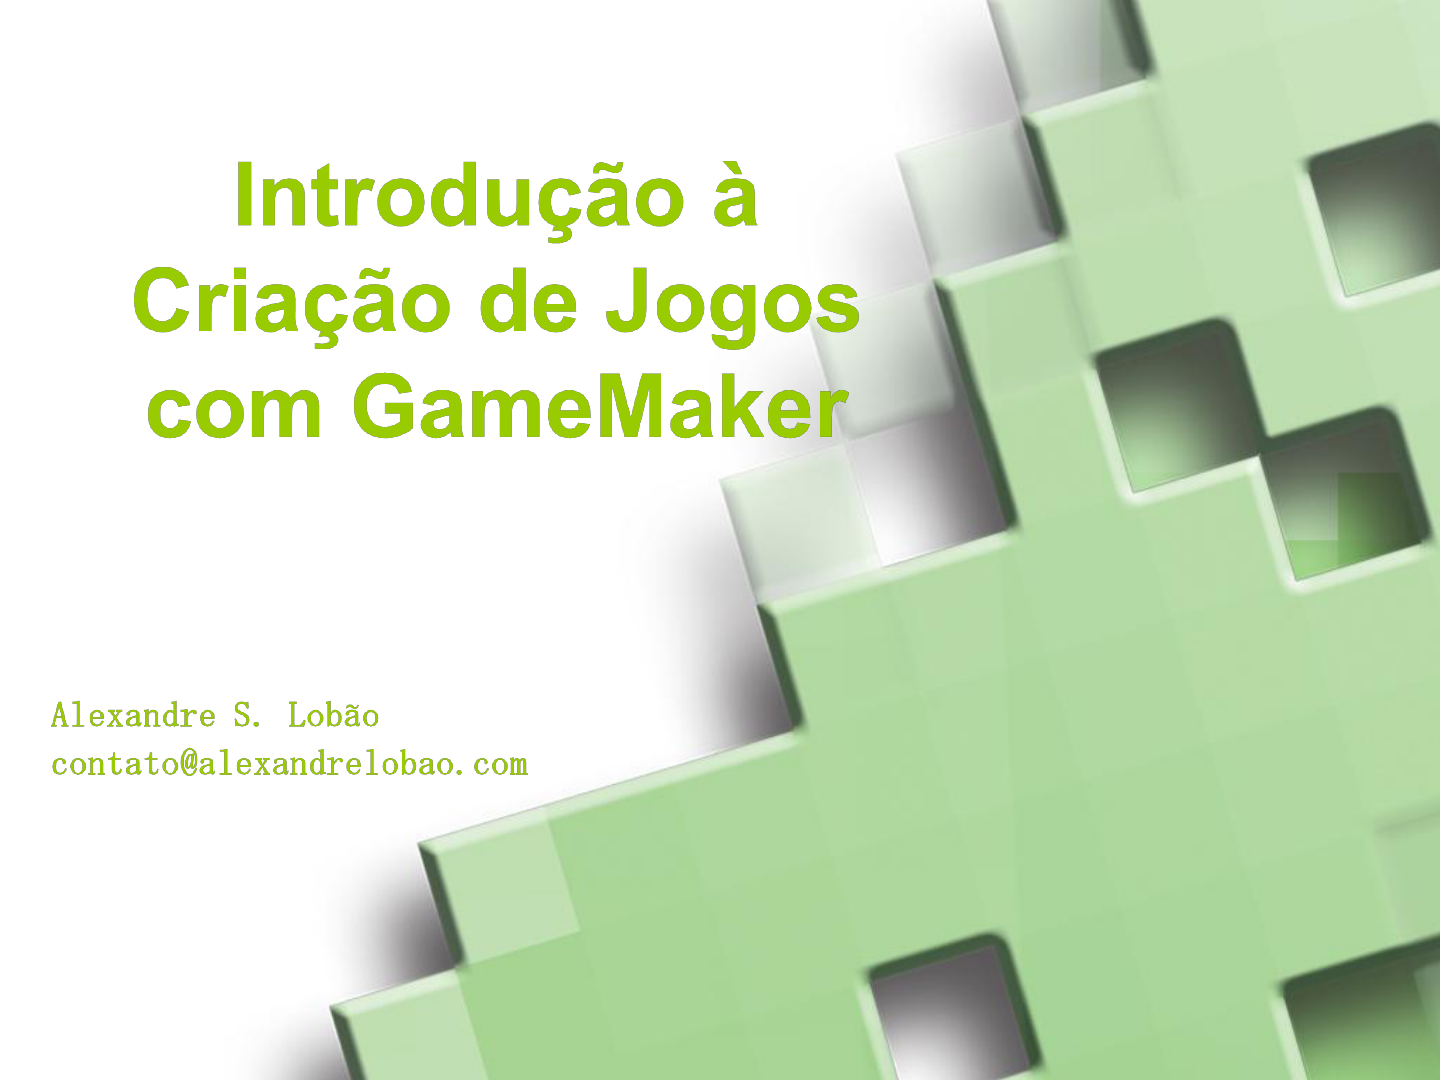 Engine GameMaker se torna gratuita para projetos não comerciais